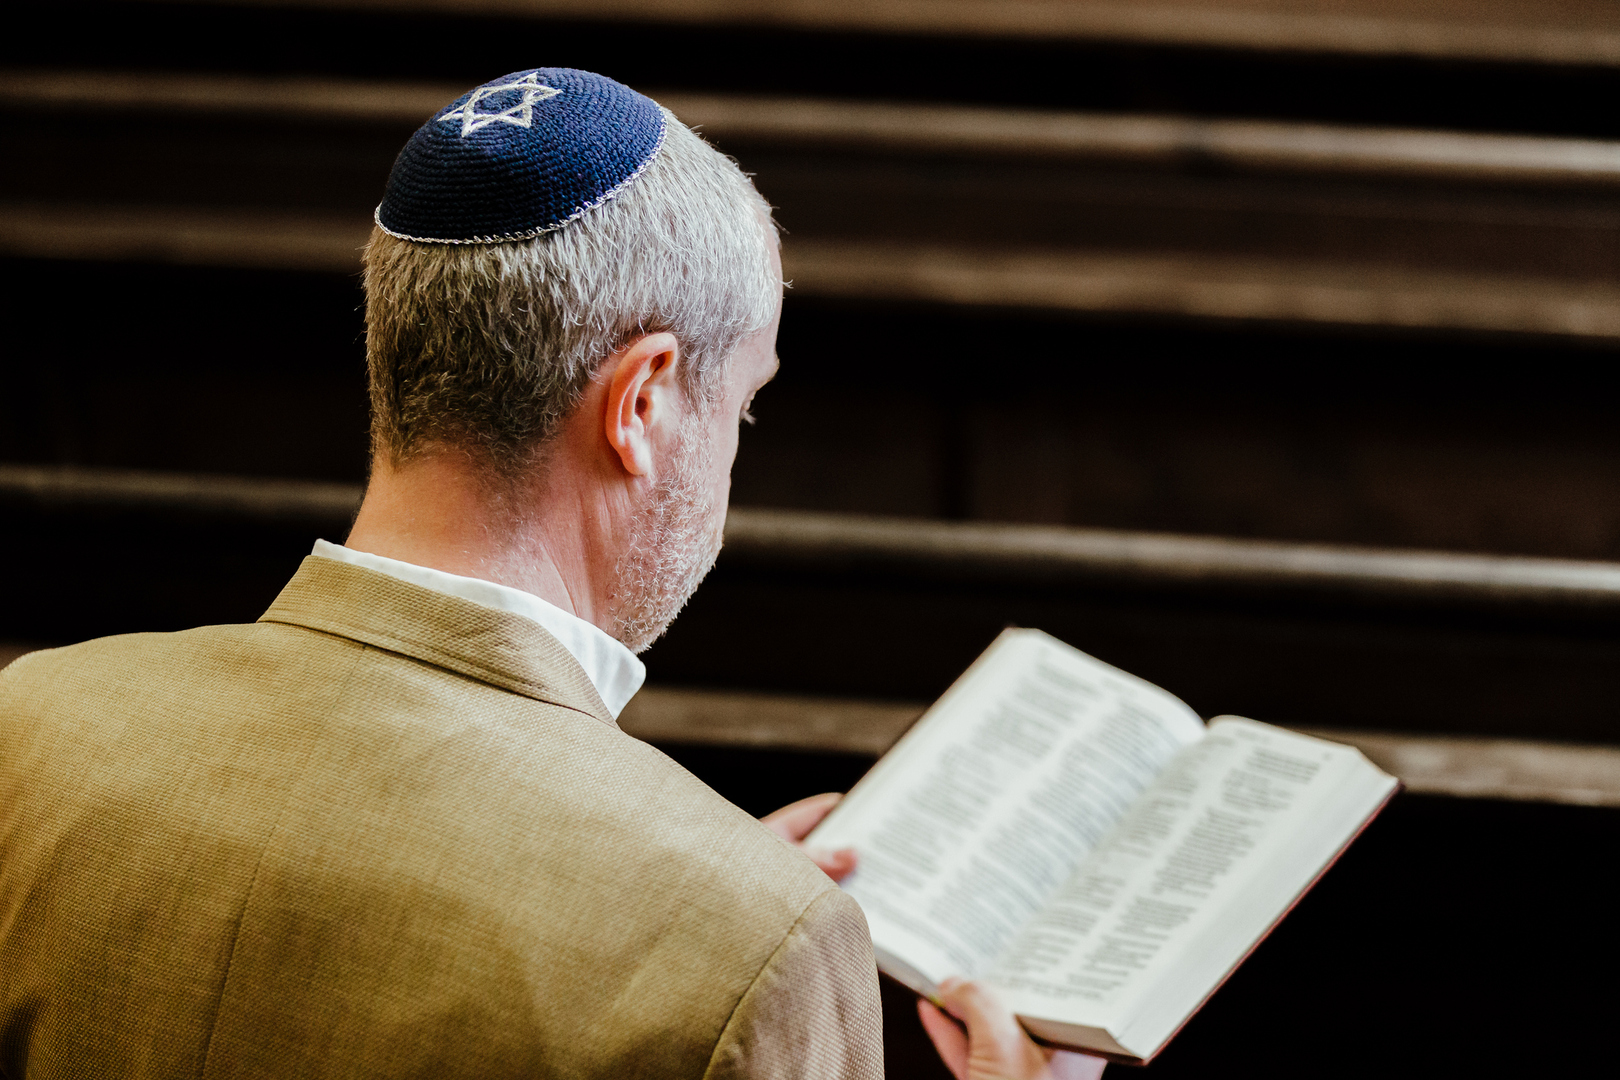 زعيم لليهود الأوروبيين يتهم بن غفير بمفاقمة معاداة السامية